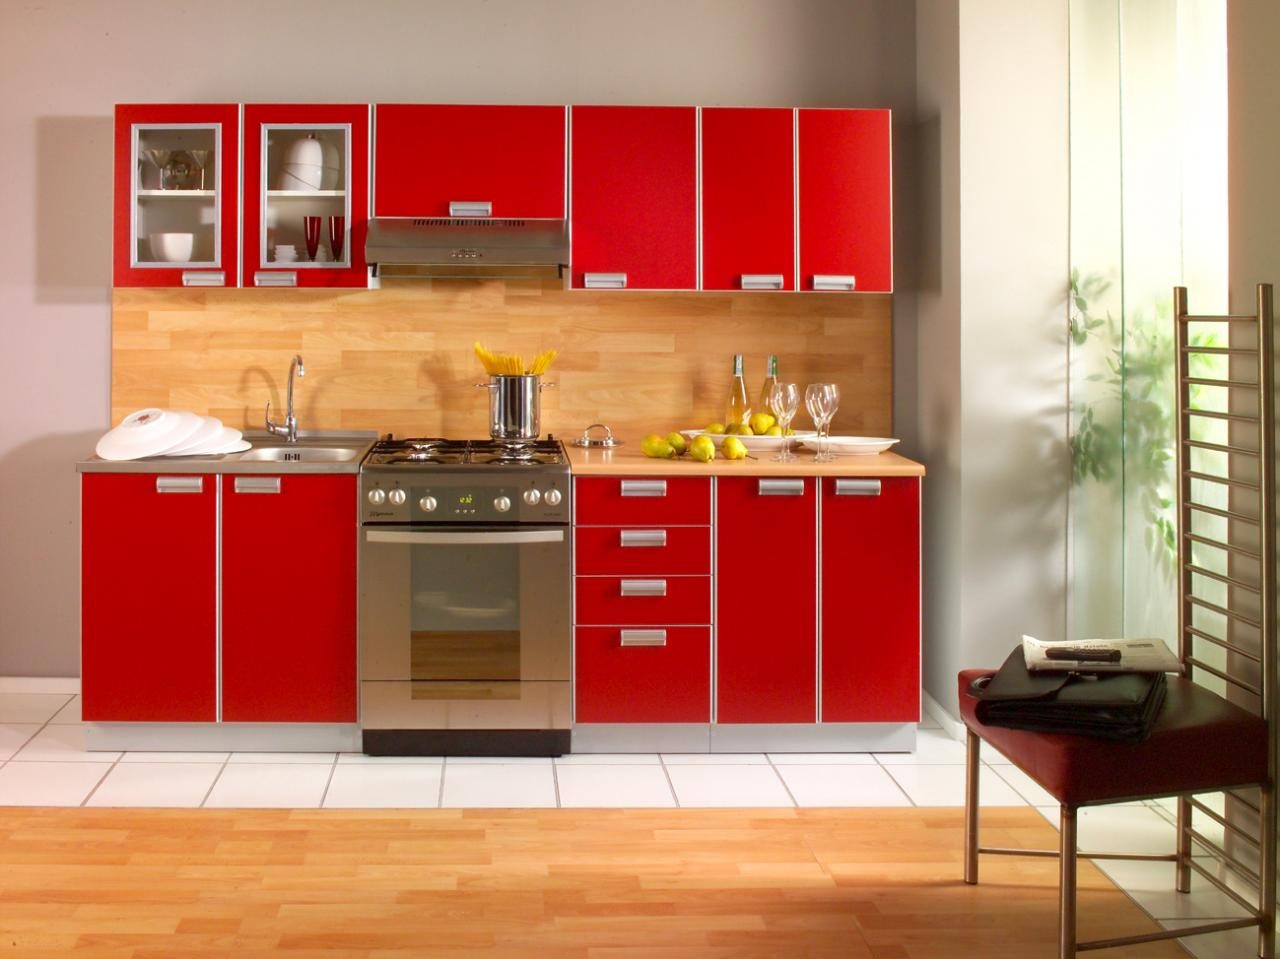 Mobiliario cocina rojo :: Imágenes y fotos